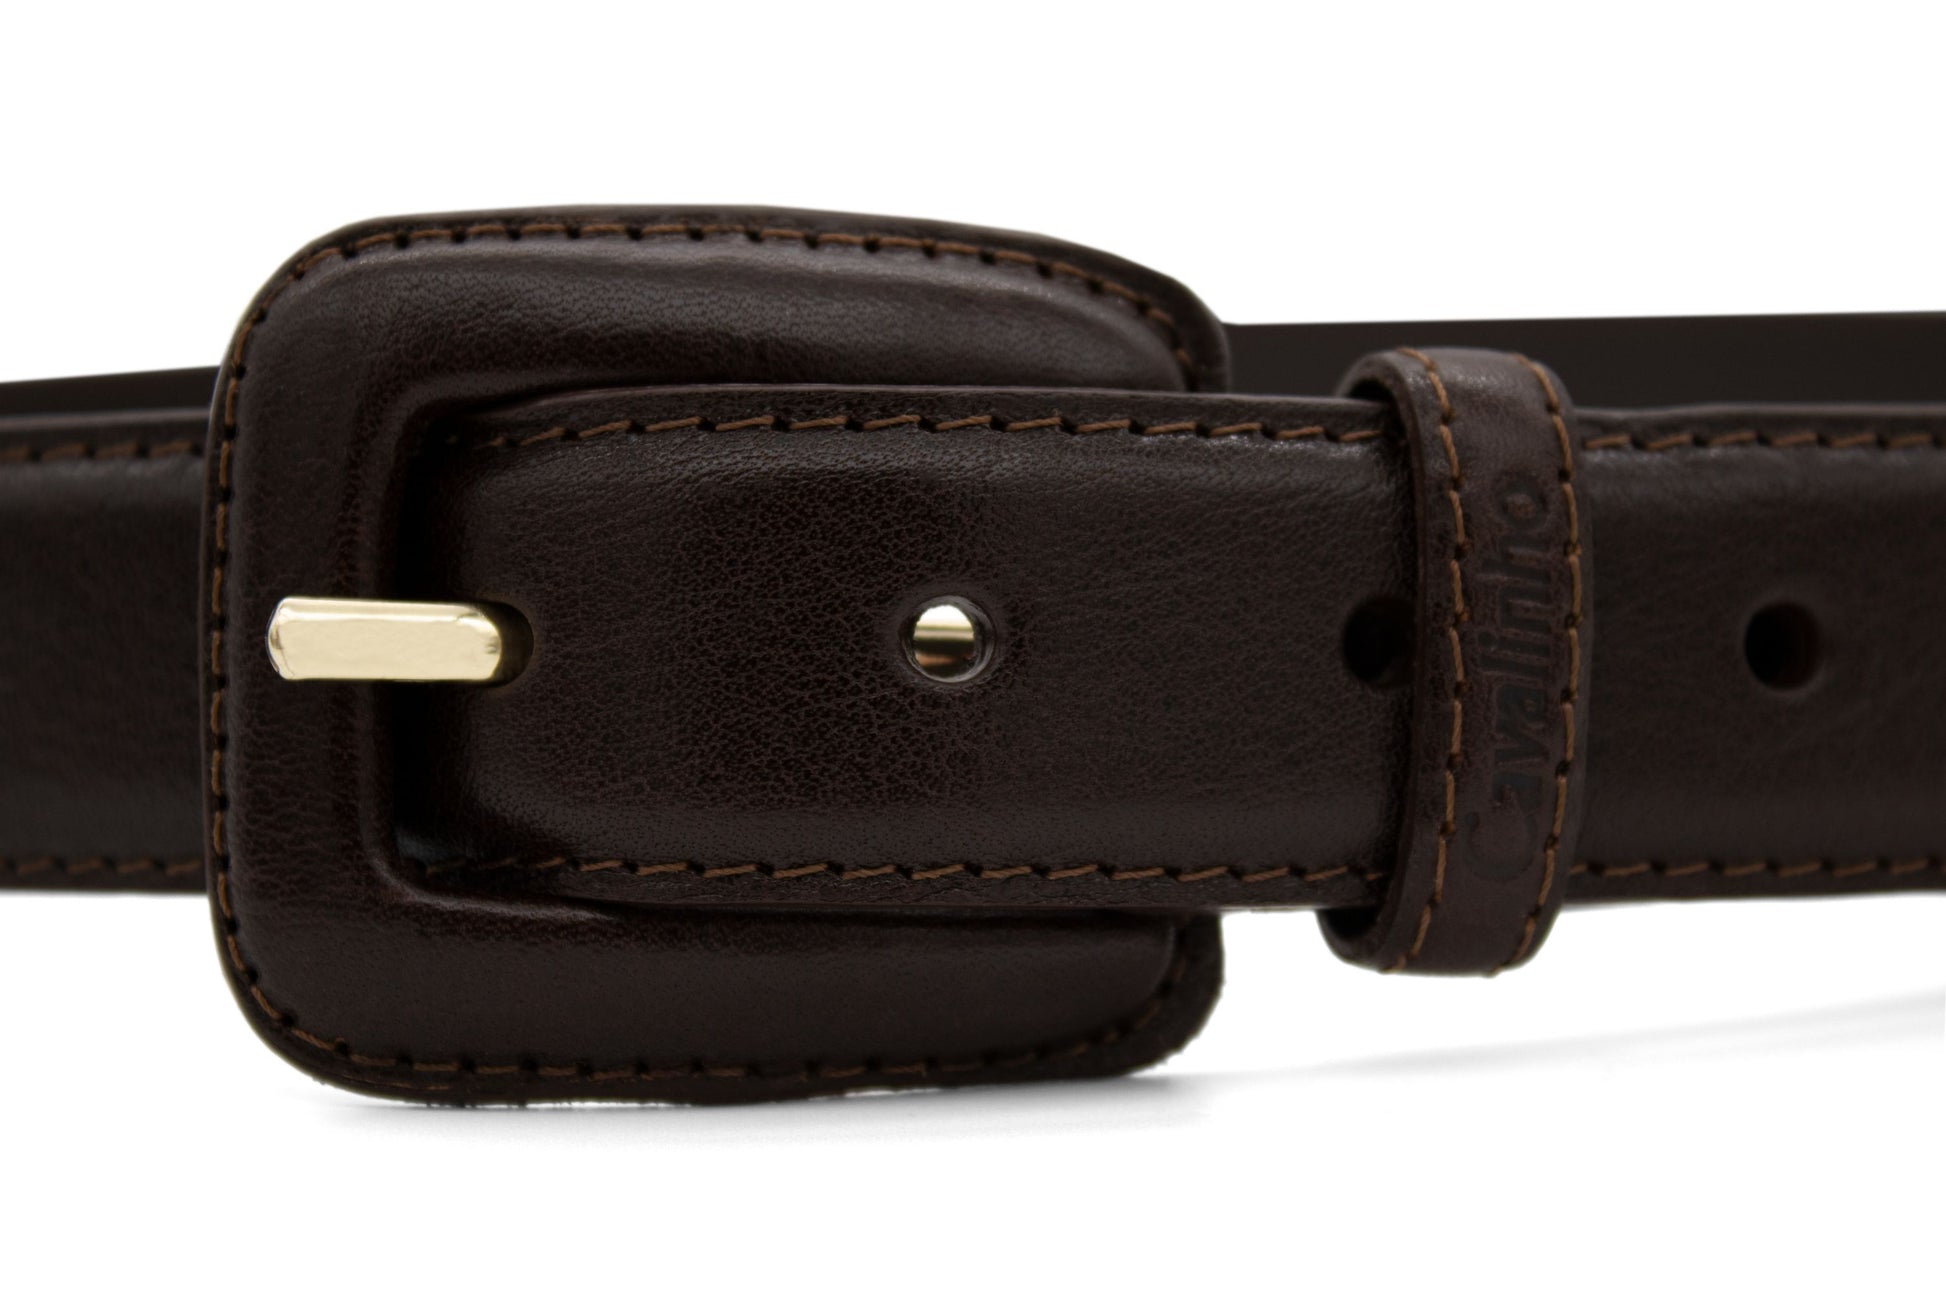 Cavalinho Classic Leather Belt - Brown Gold - 58010914.02_2_e3739cd5-fb7e-4751-bf14-bdb210462530